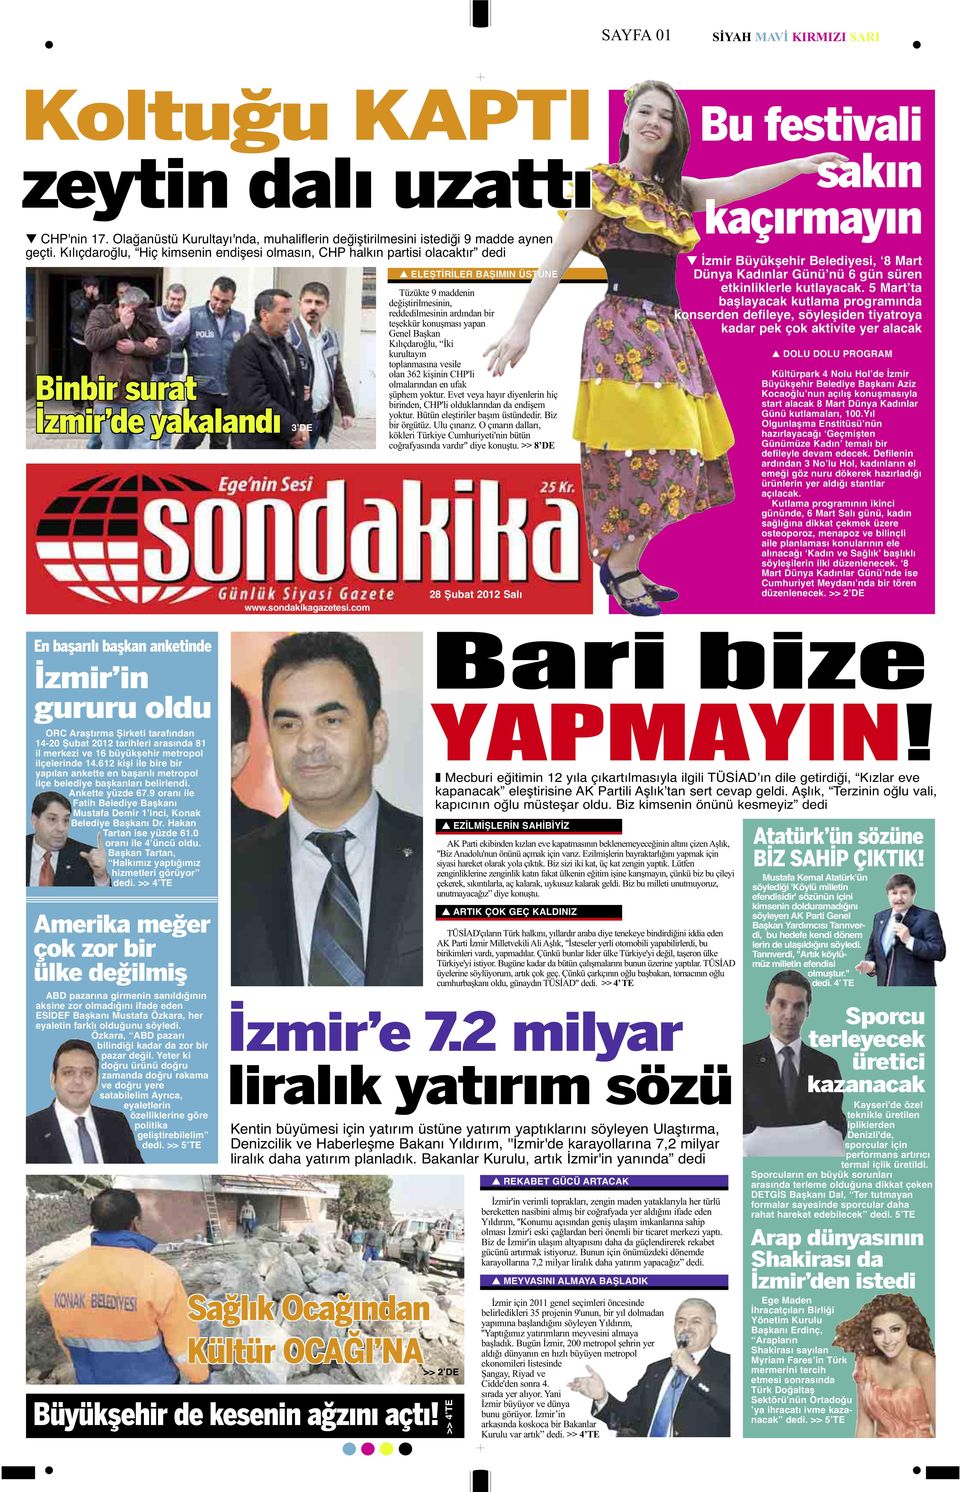 com ELEŞTİRİLER BAŞIMIN ÜSTÜNE Tüzükte 9 maddenin değiştirilmesinin, reddedilmesinin ardından bir teşekkür konuşması yapan Genel Başkan Kılıçdaroğlu, İki kurultayın toplanmasına vesile olan 362